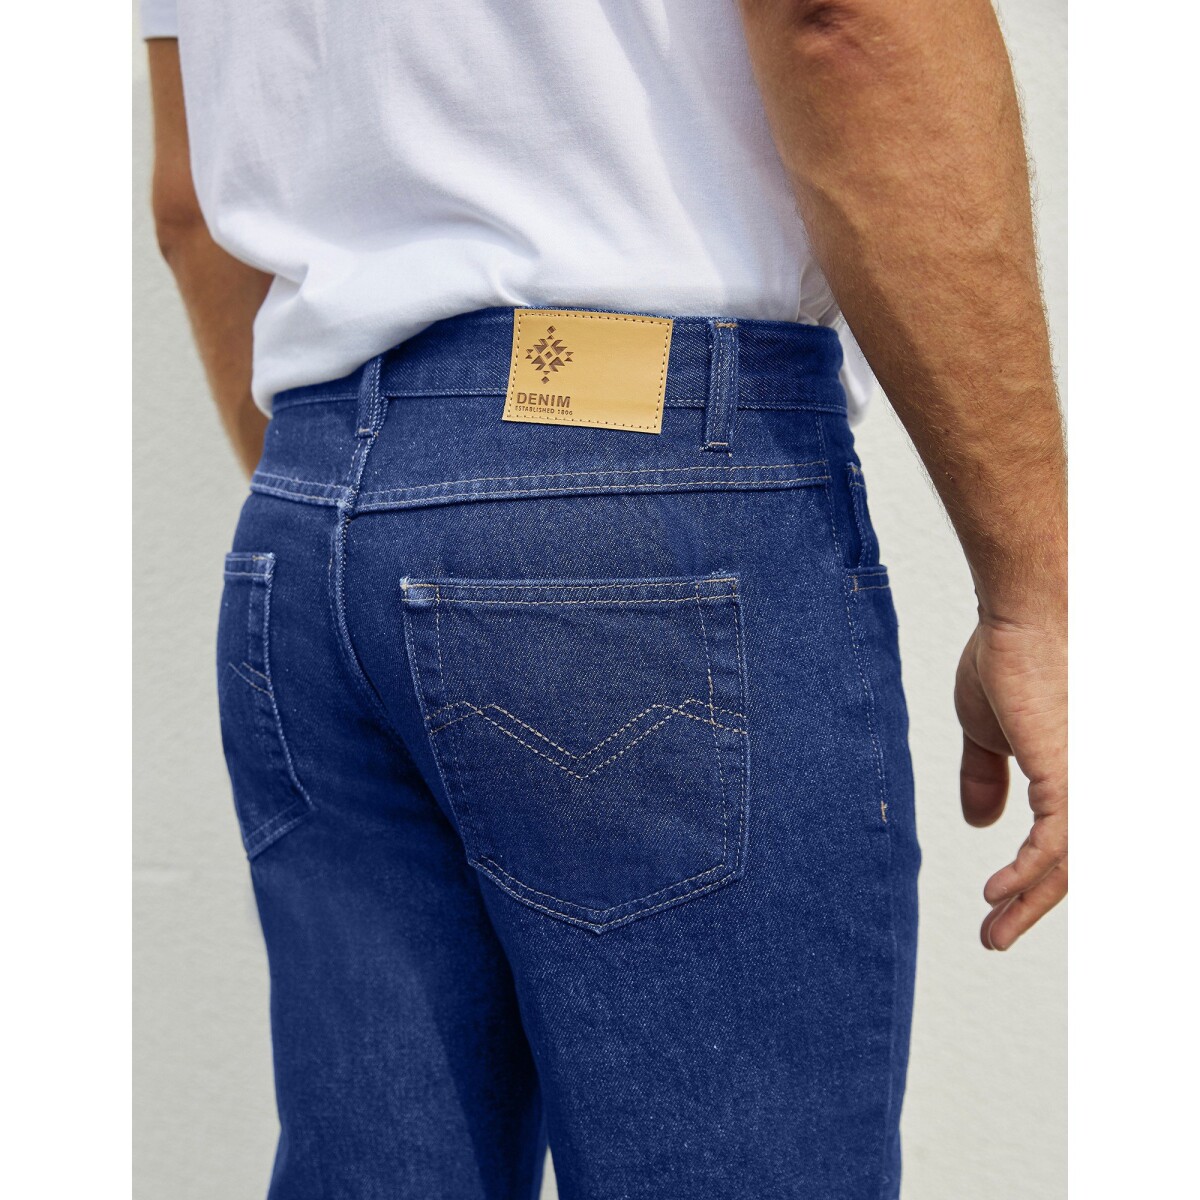 Strečové džínsy, vnútorná dĺžka nohavíc 82 cm